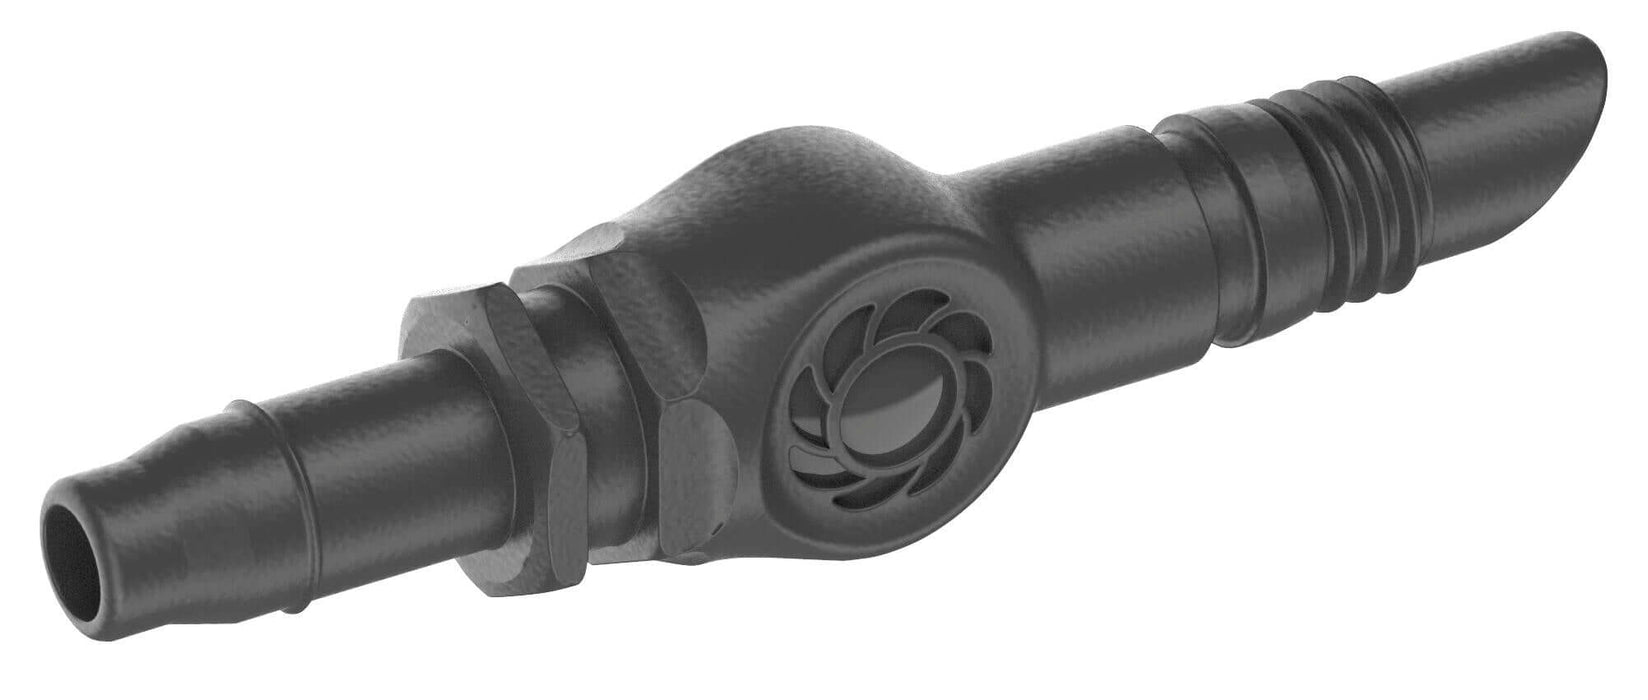 Gardena Micro-Drip Connector 4,6 mm 3/16" 10pk